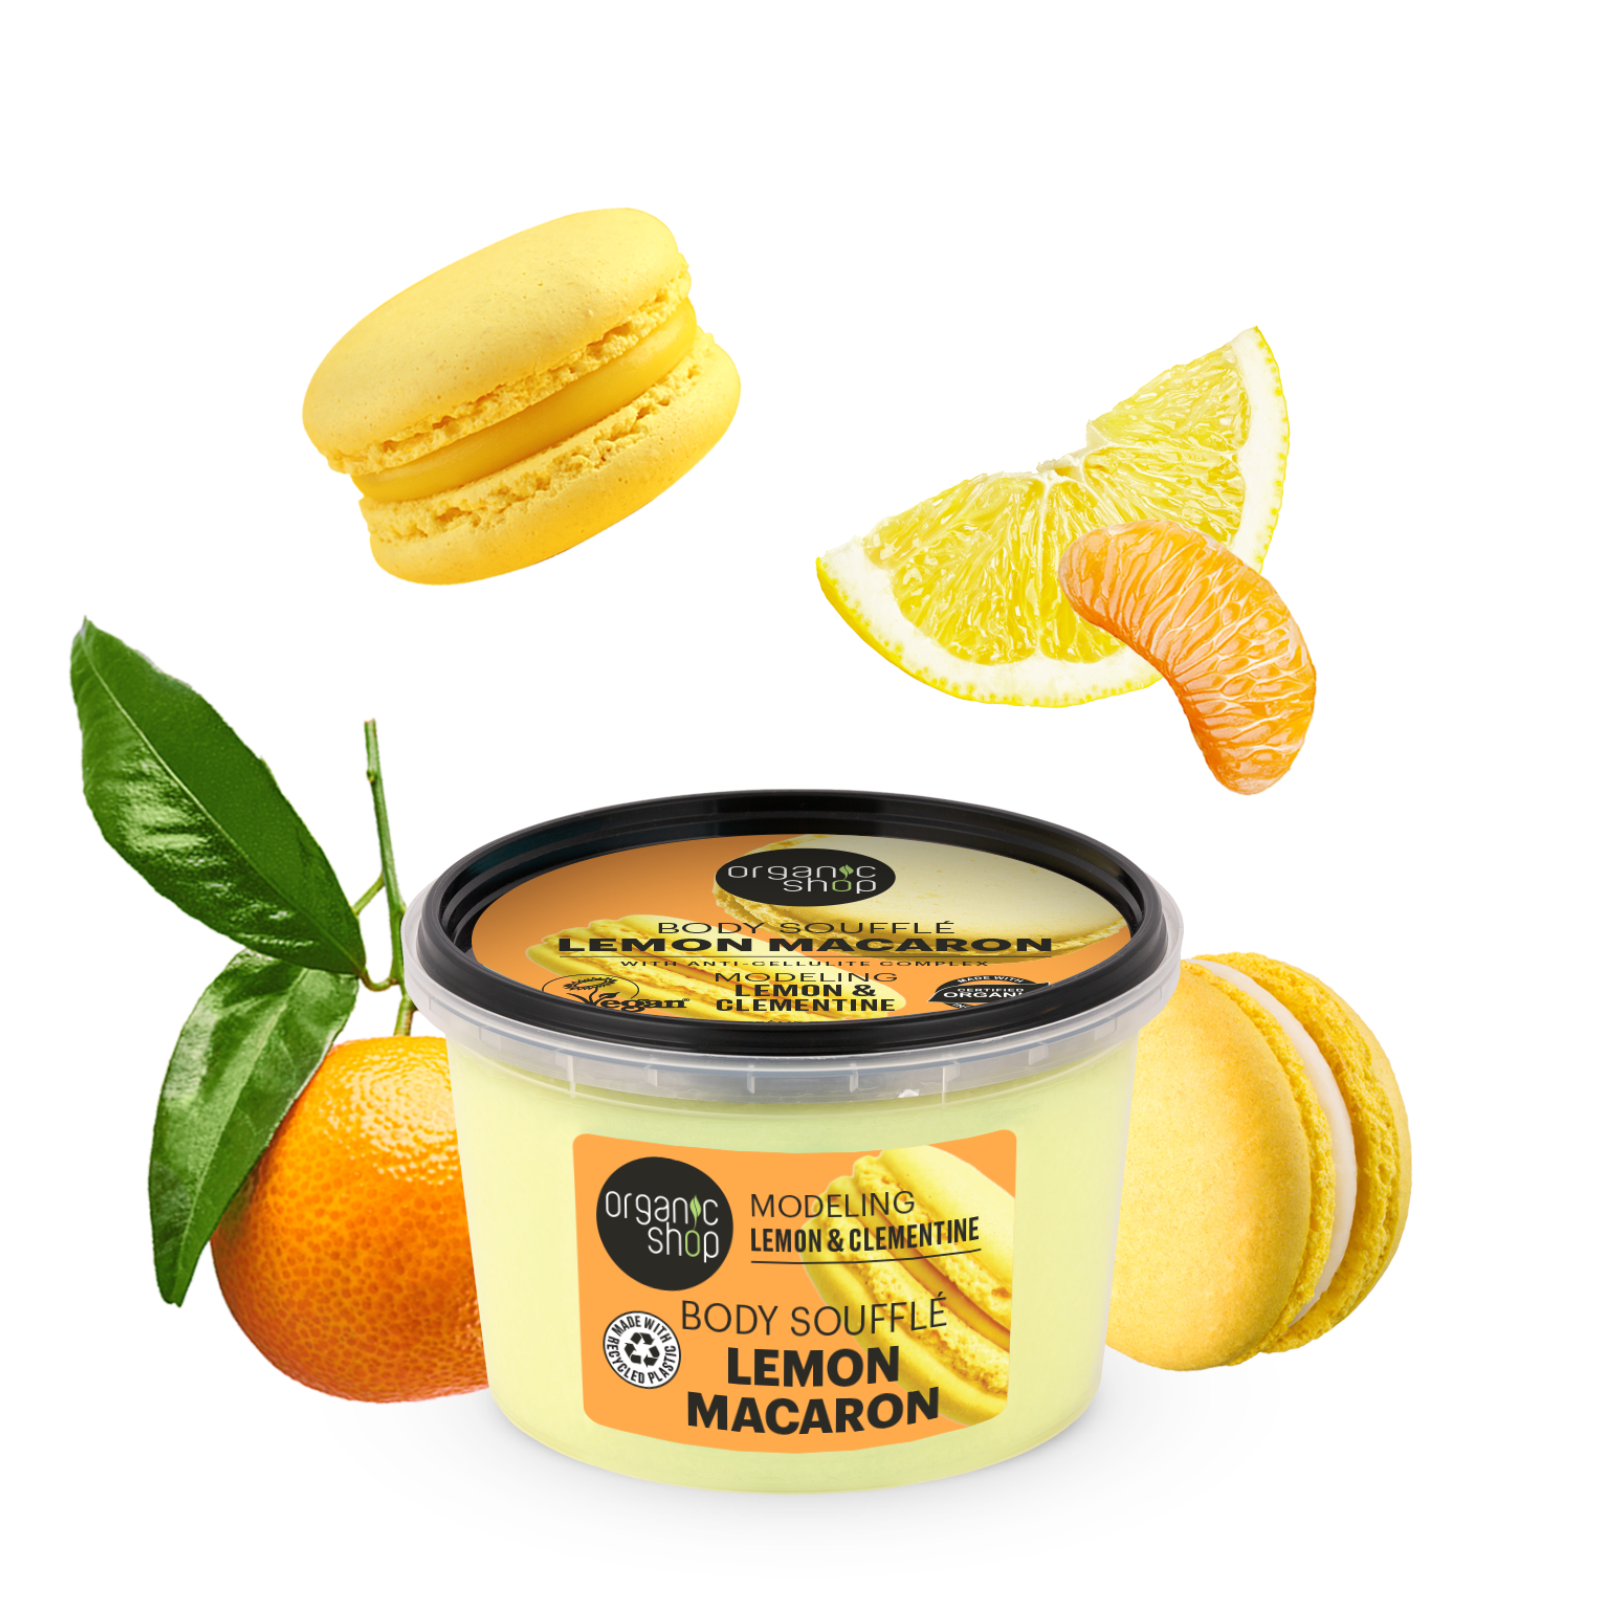 Organic Shop Lemon Macaron Modeling Body Souffle Lemon & Clementine (250ml)